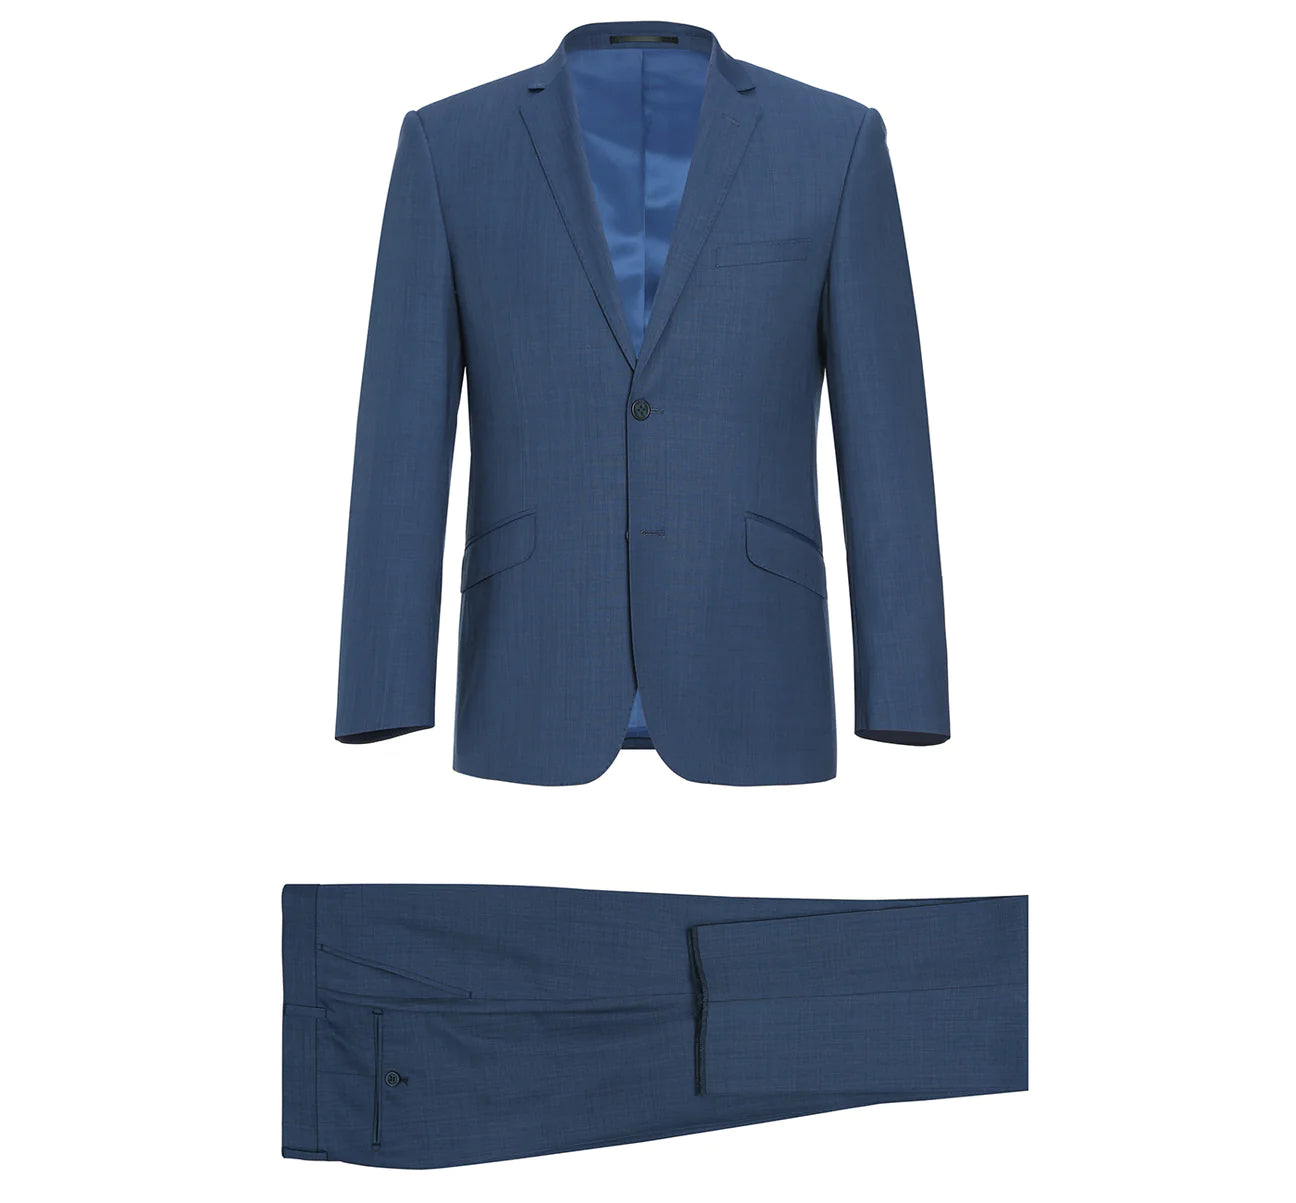 Renoir Slim Fit Notch Lapel Heathered Blue Suit